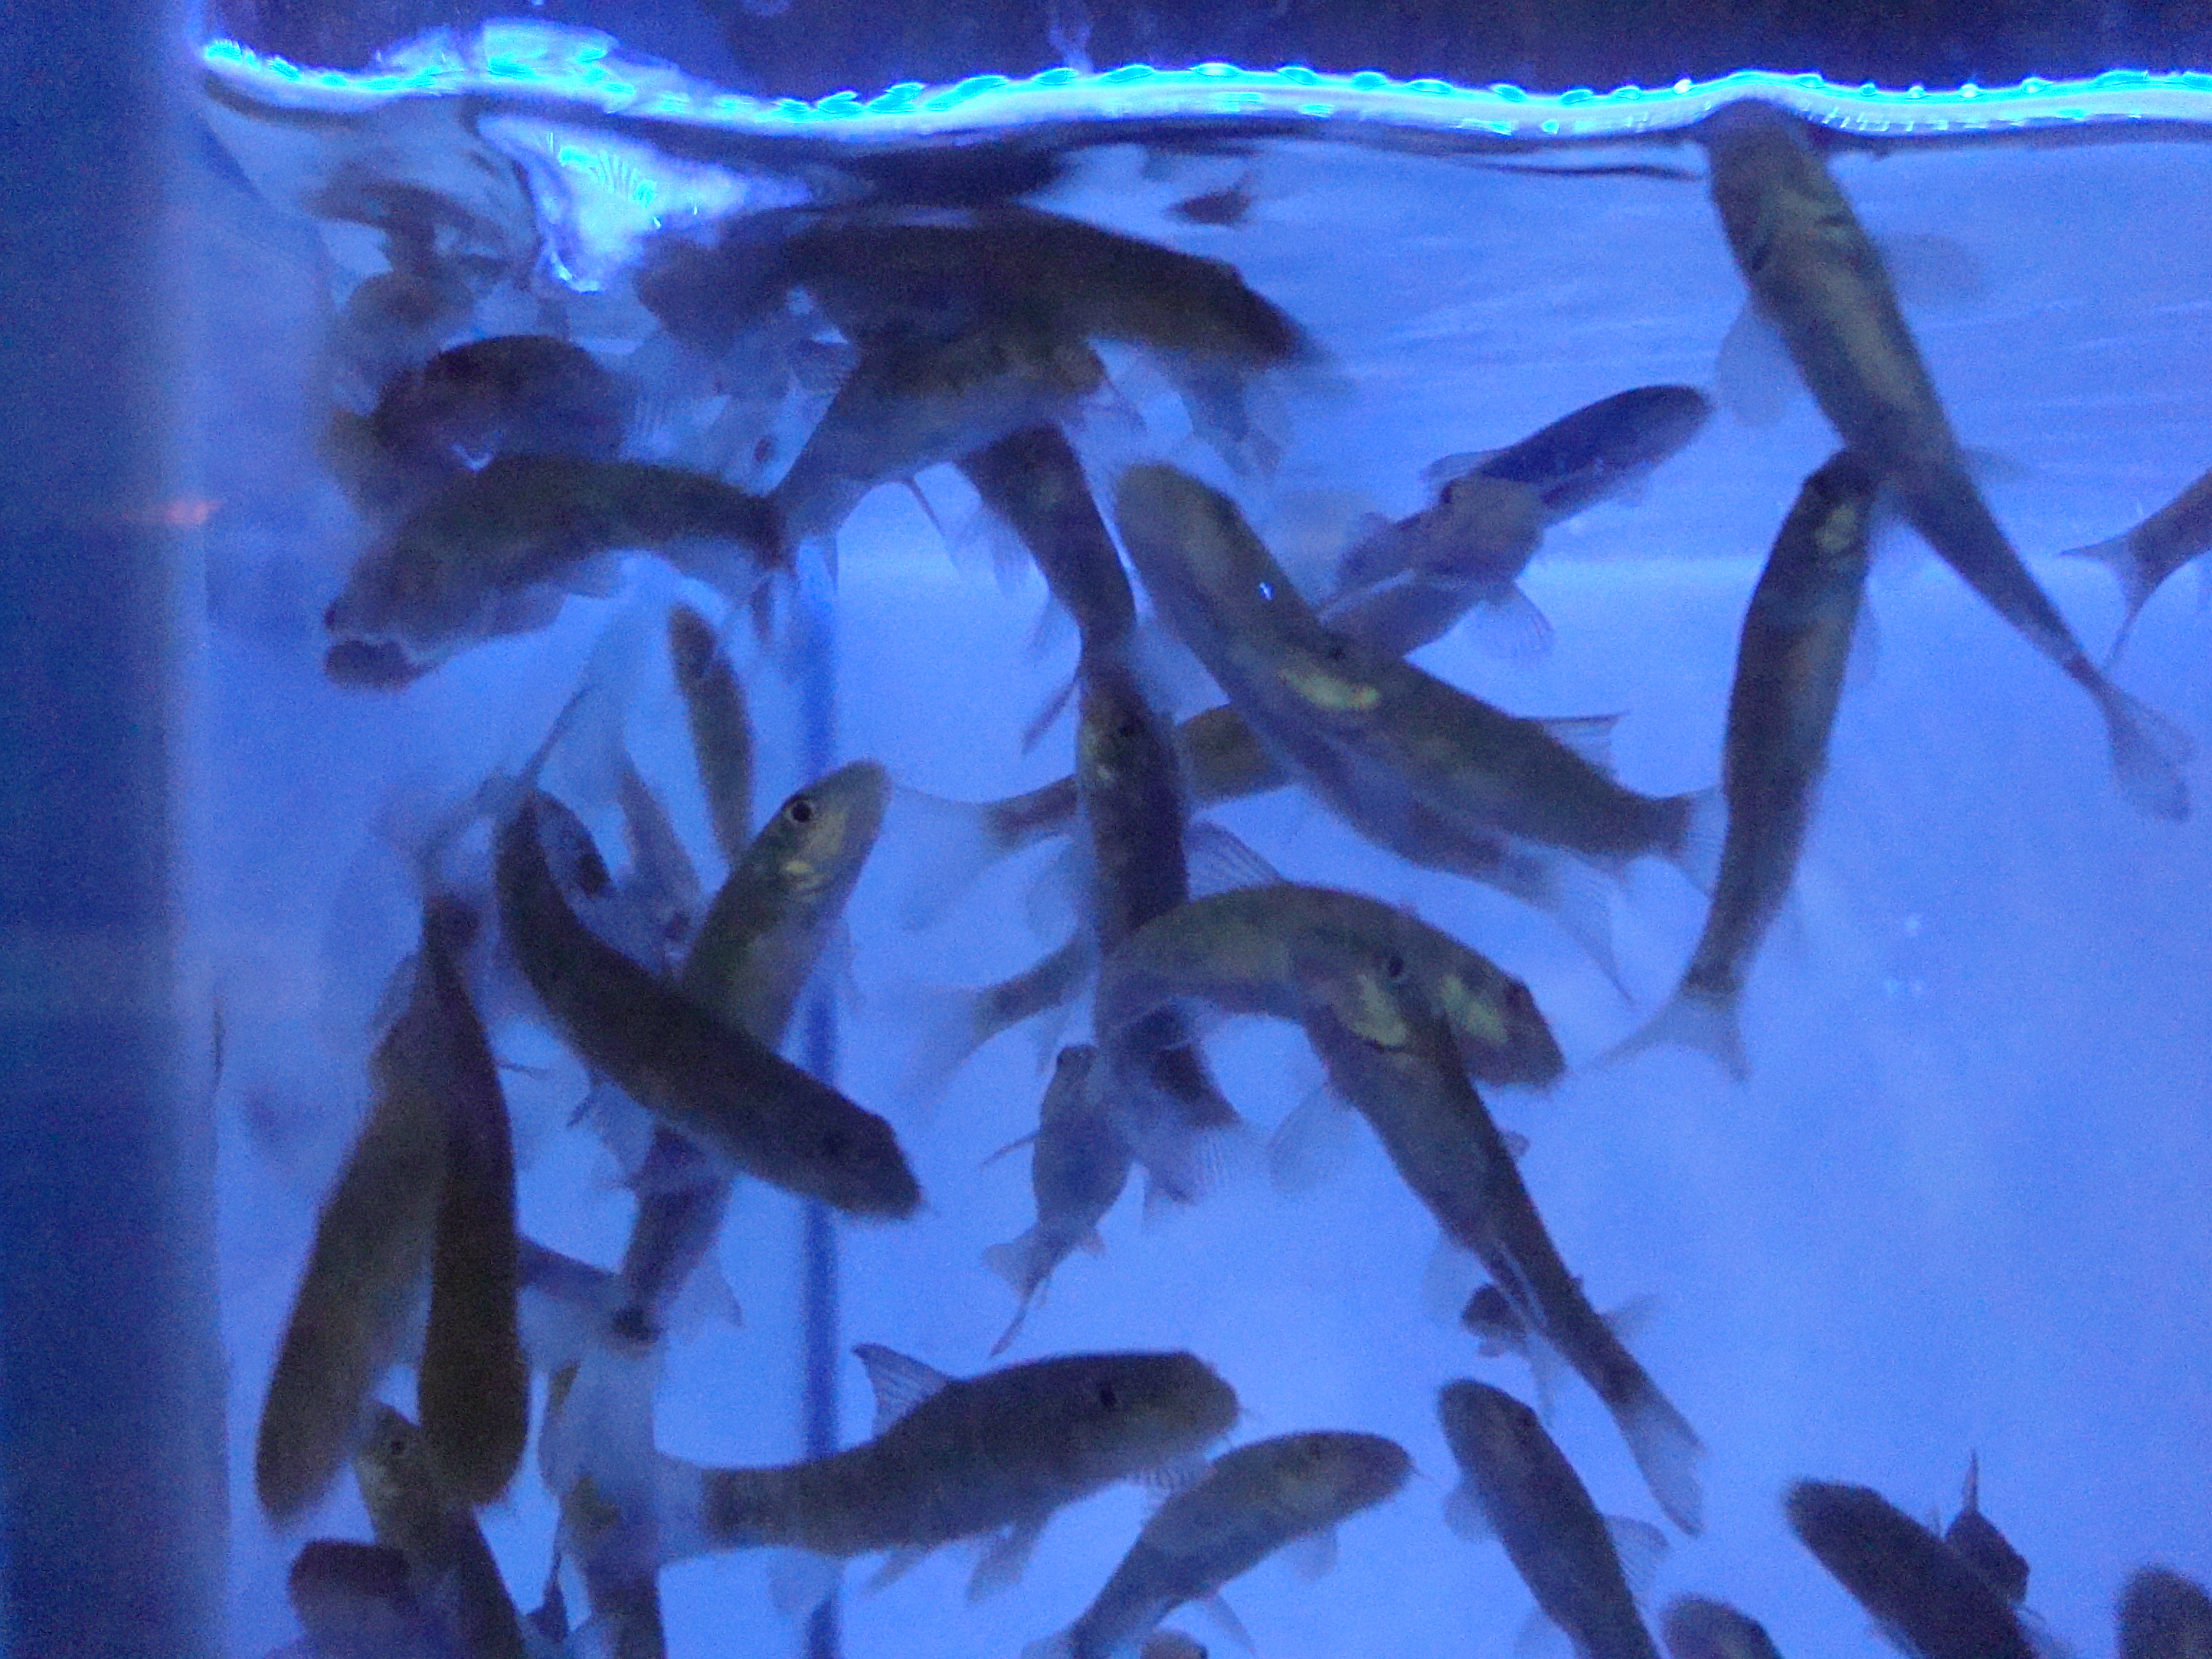 Garra-rufa fish in tank photo